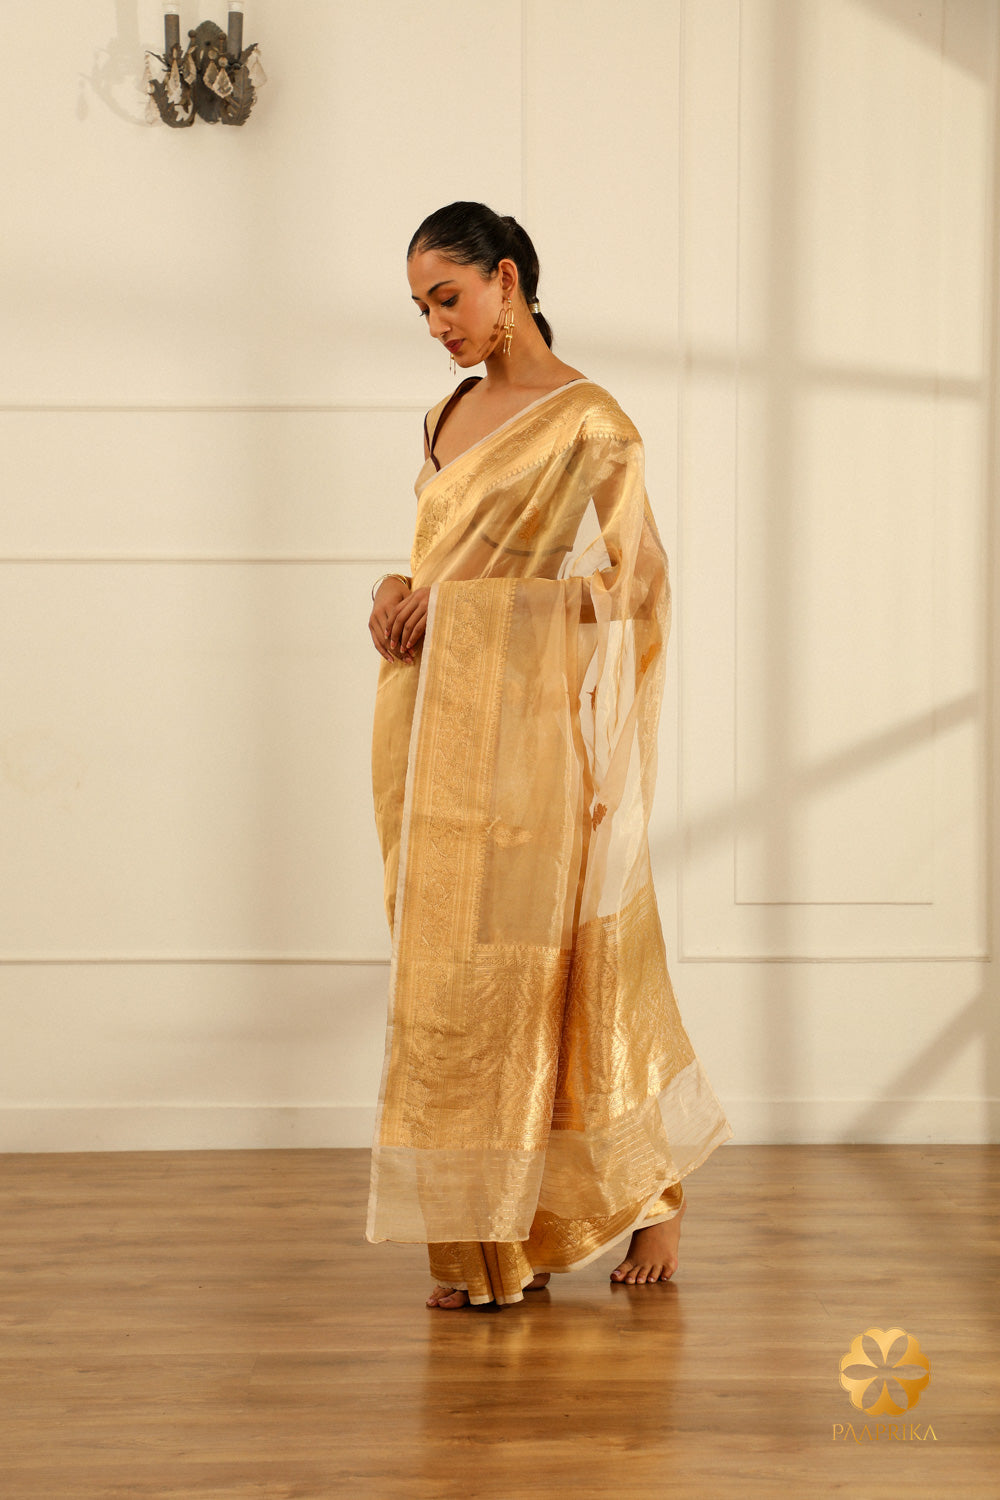 Close-up of Traditional Elegance in Golden Banarasi Saree.